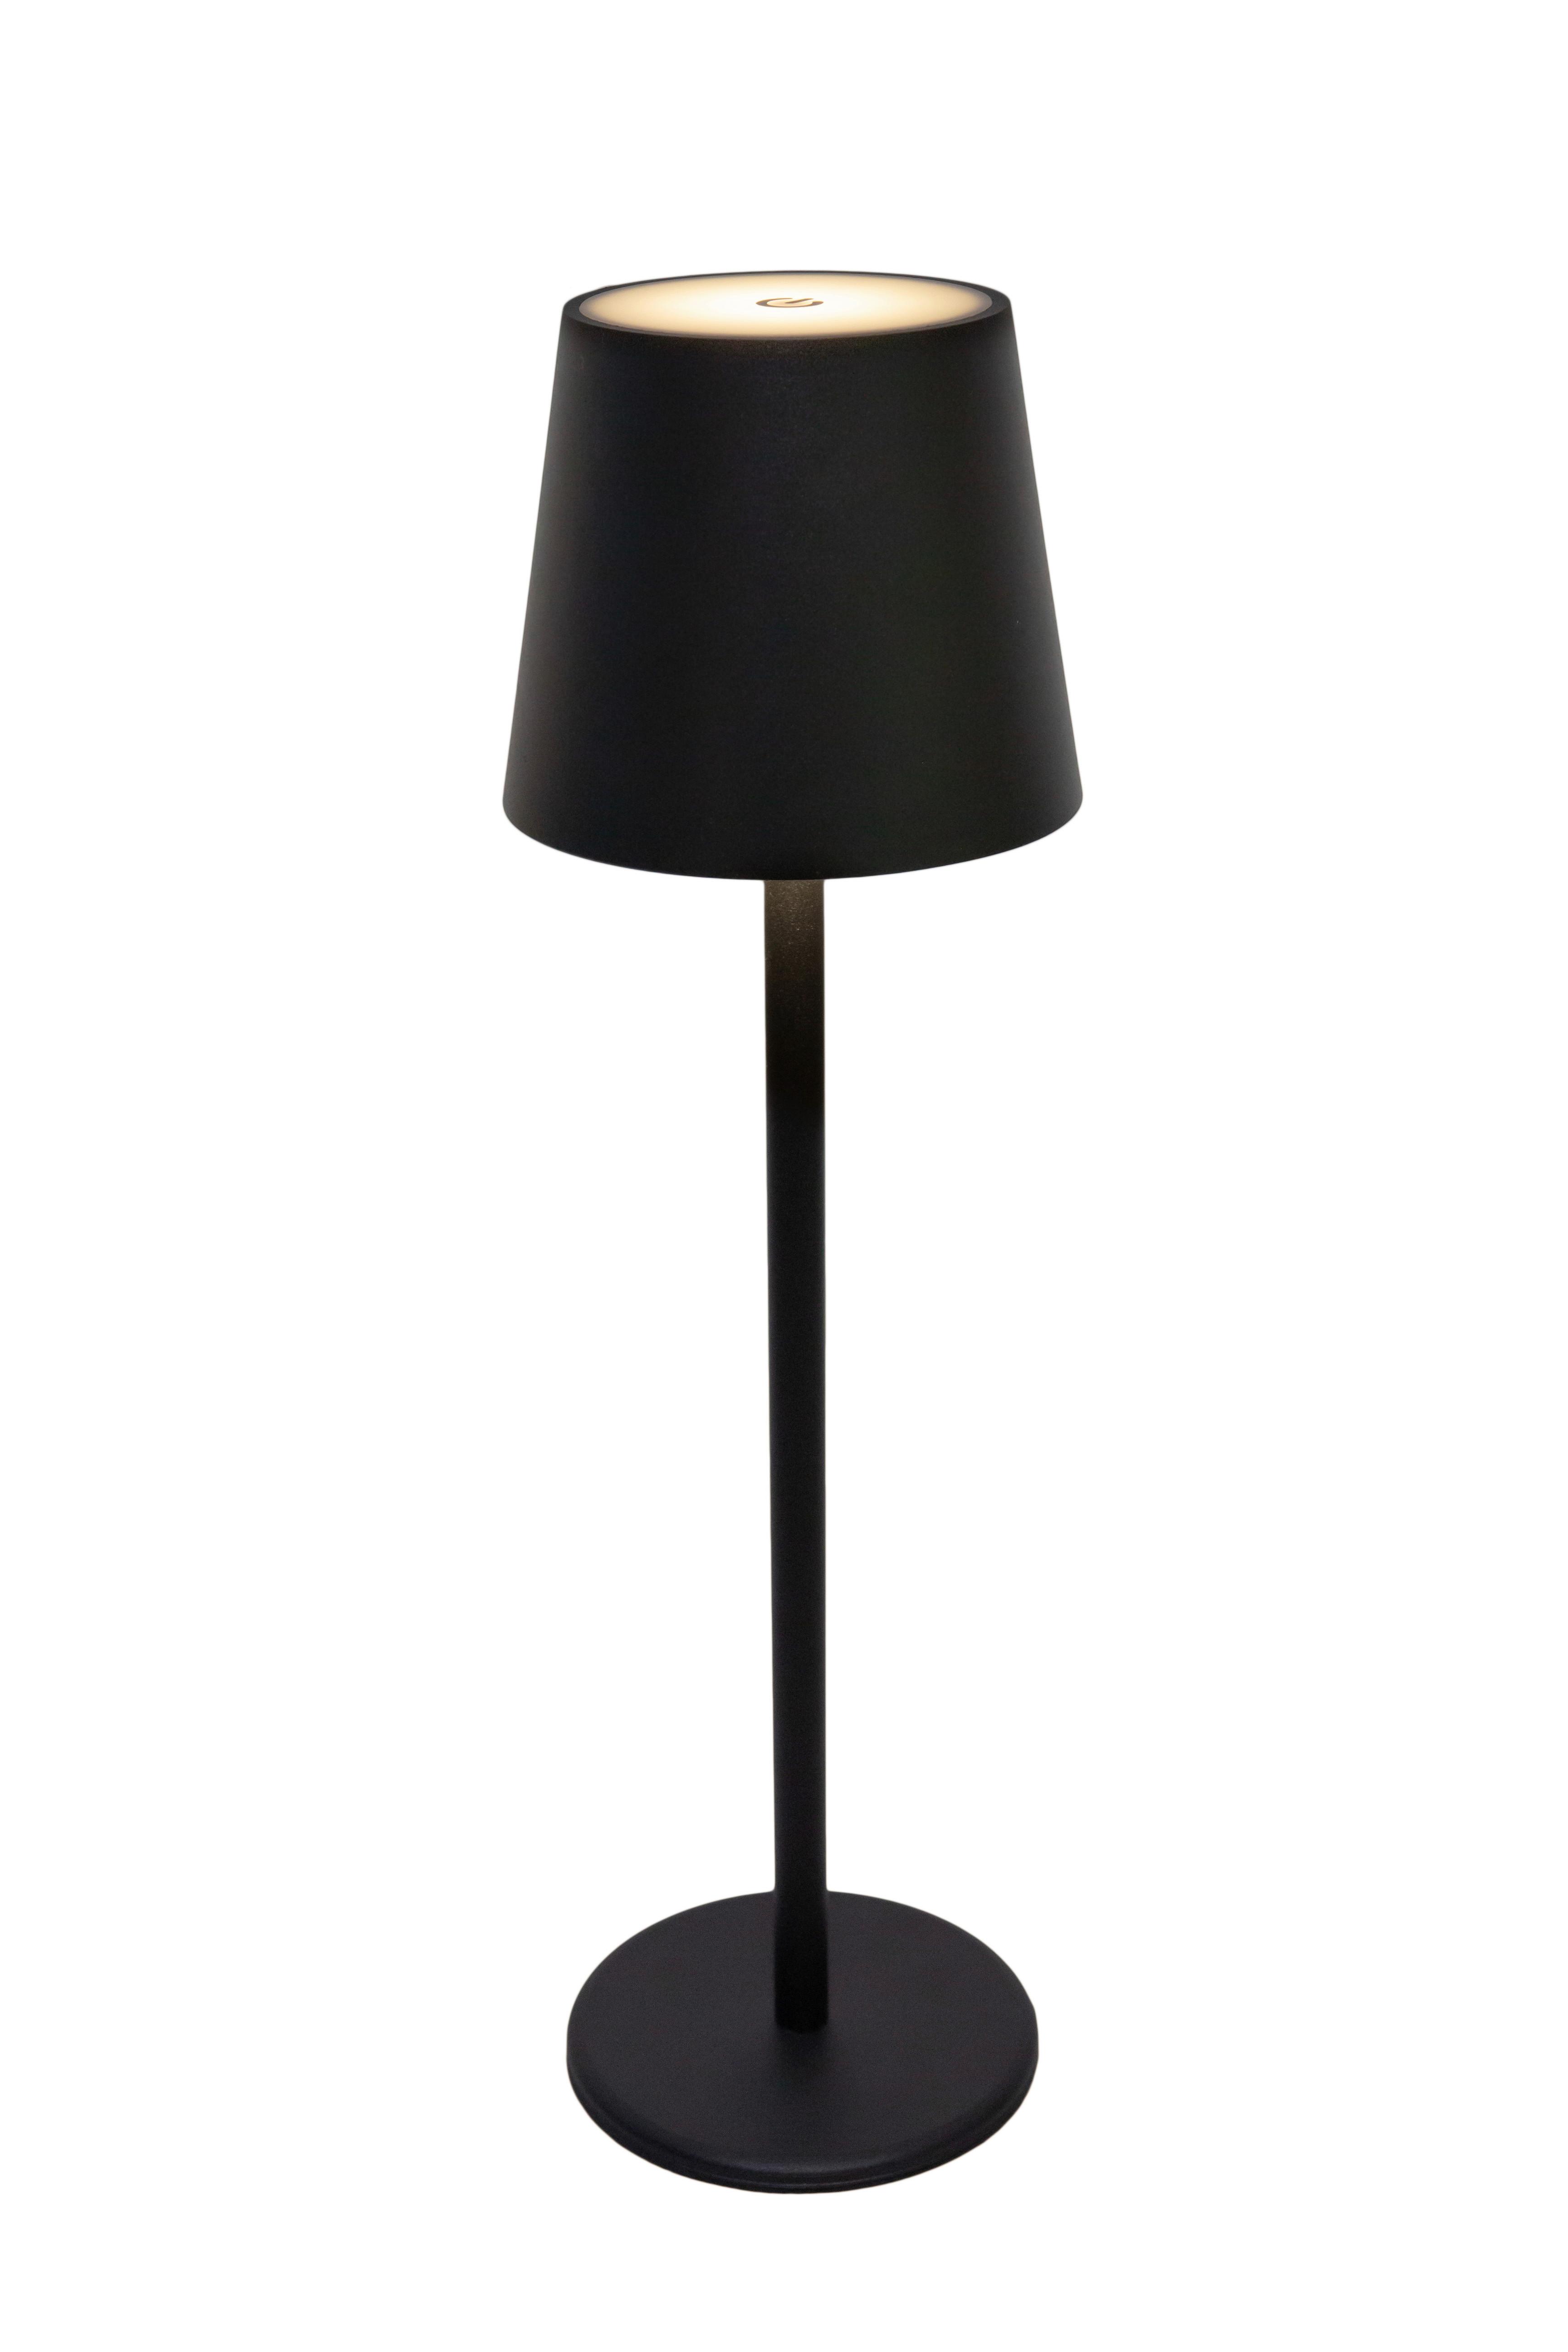 Namizna Led-svetilka Noemi - črna, Konvencionalno, kovina/umetna masa (11,5/36cm) - Modern Living